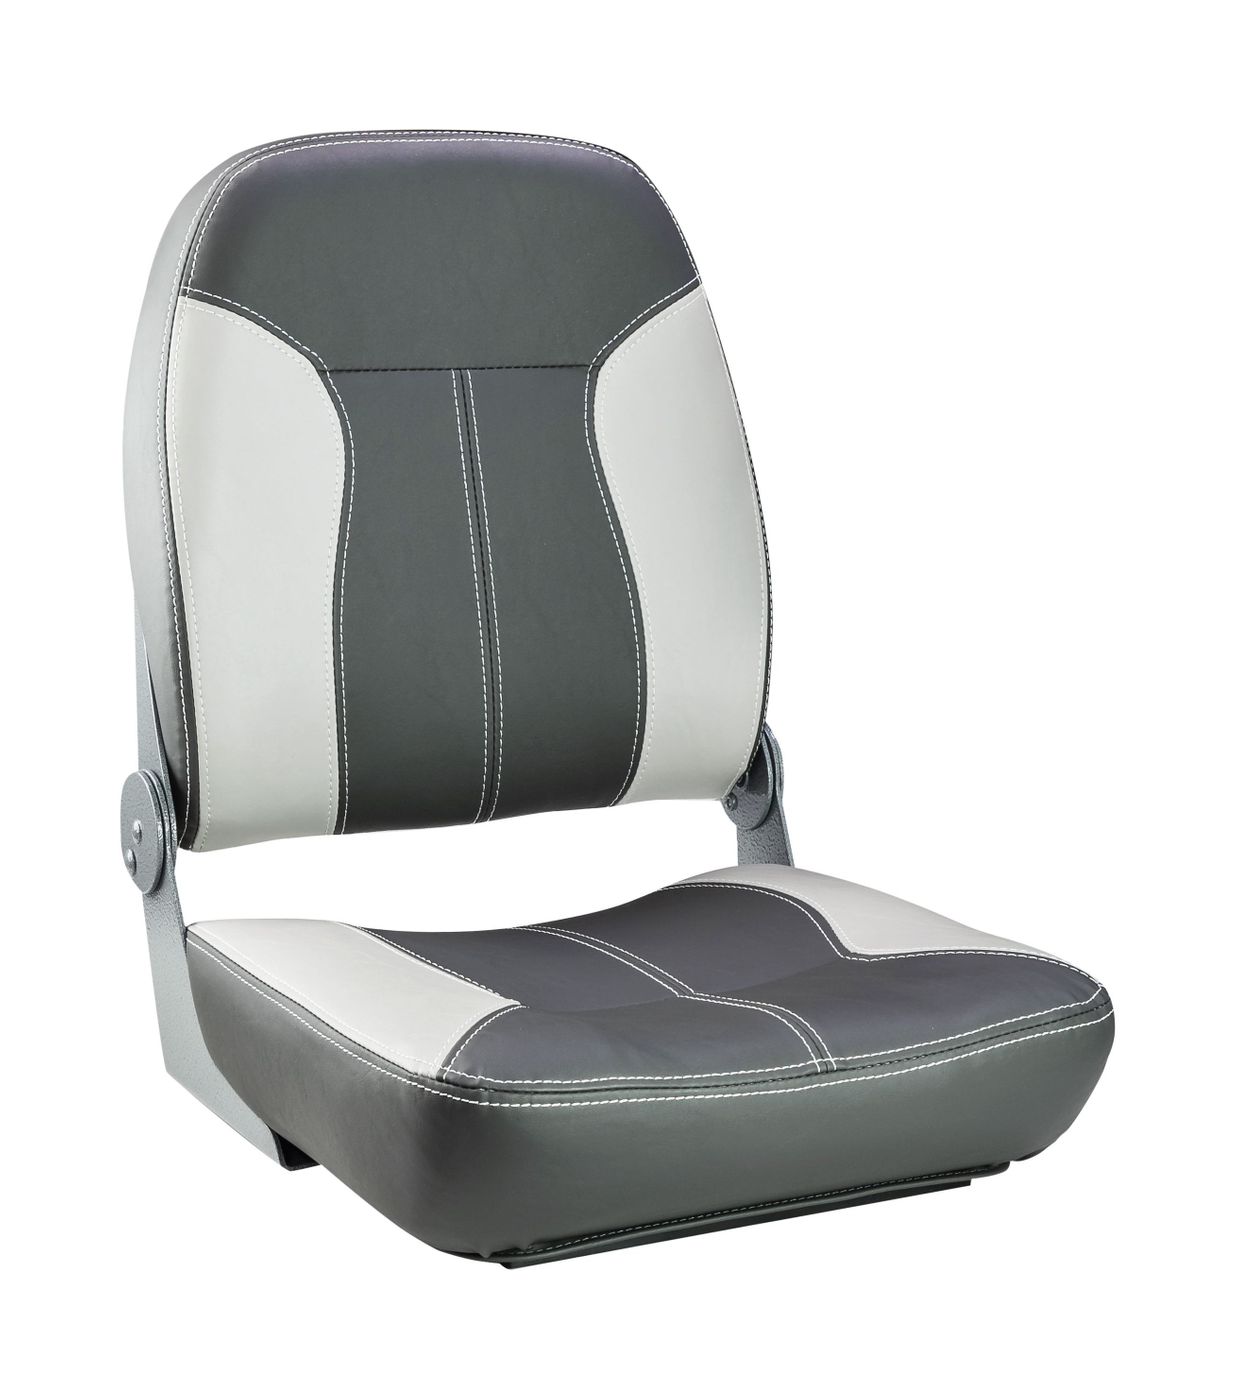 Кресло складное мягкое SPORT с высокой спинкой, серый/темно-серый 1040543 кресло складное мягкое sport с высокой спинкой серый темно серый 1040543